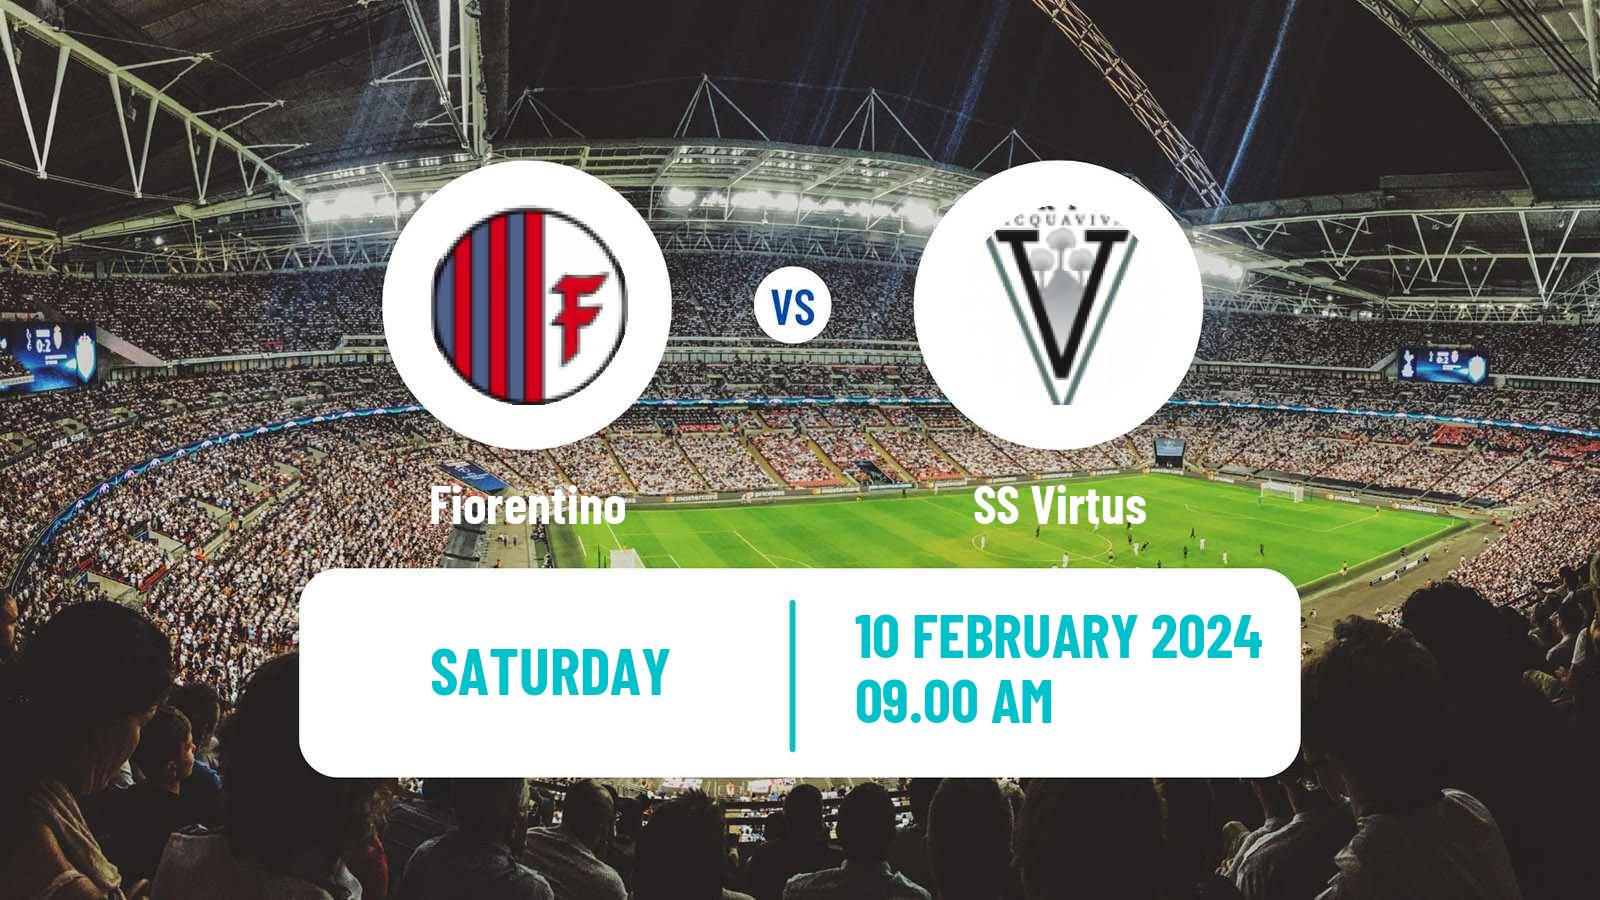 Soccer San Marino Campionato Sammarinese Fiorentino - Virtus